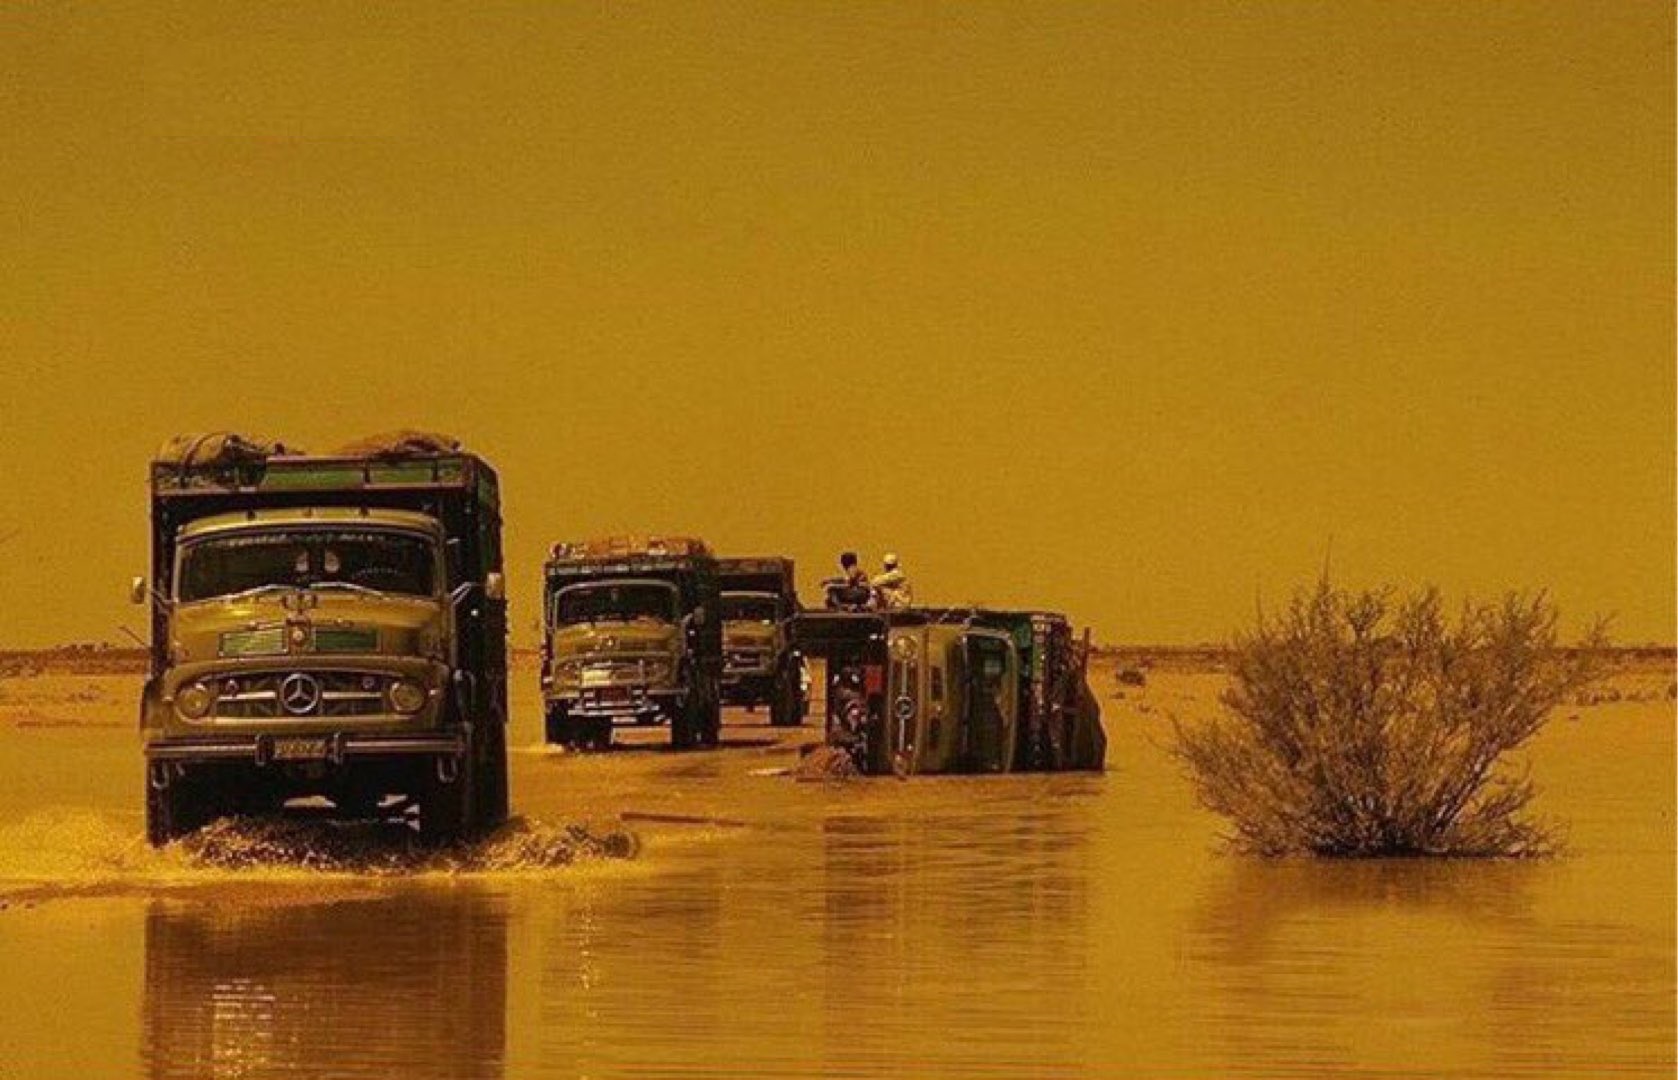 أمطار غزيرة في طريق الرياض الطائف قبل 50 عام